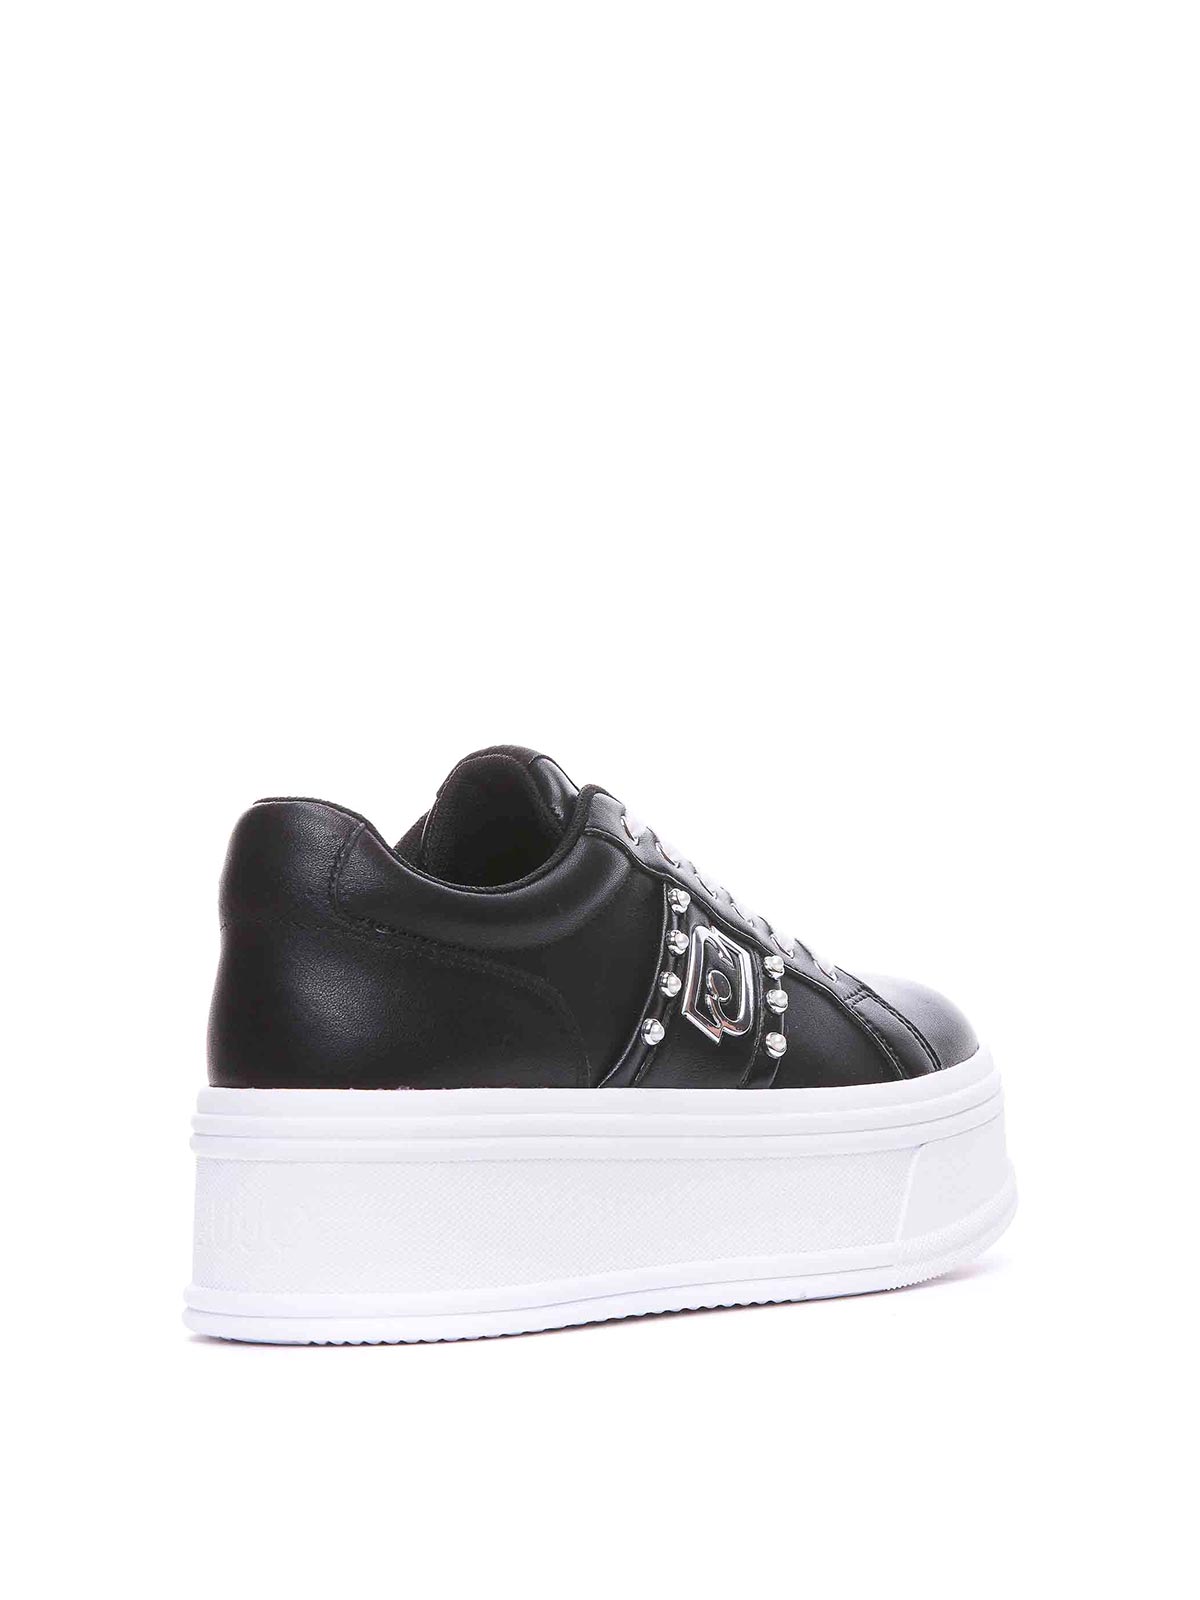 Shop Liu •jo Liu Jo Black Selma Sneakers